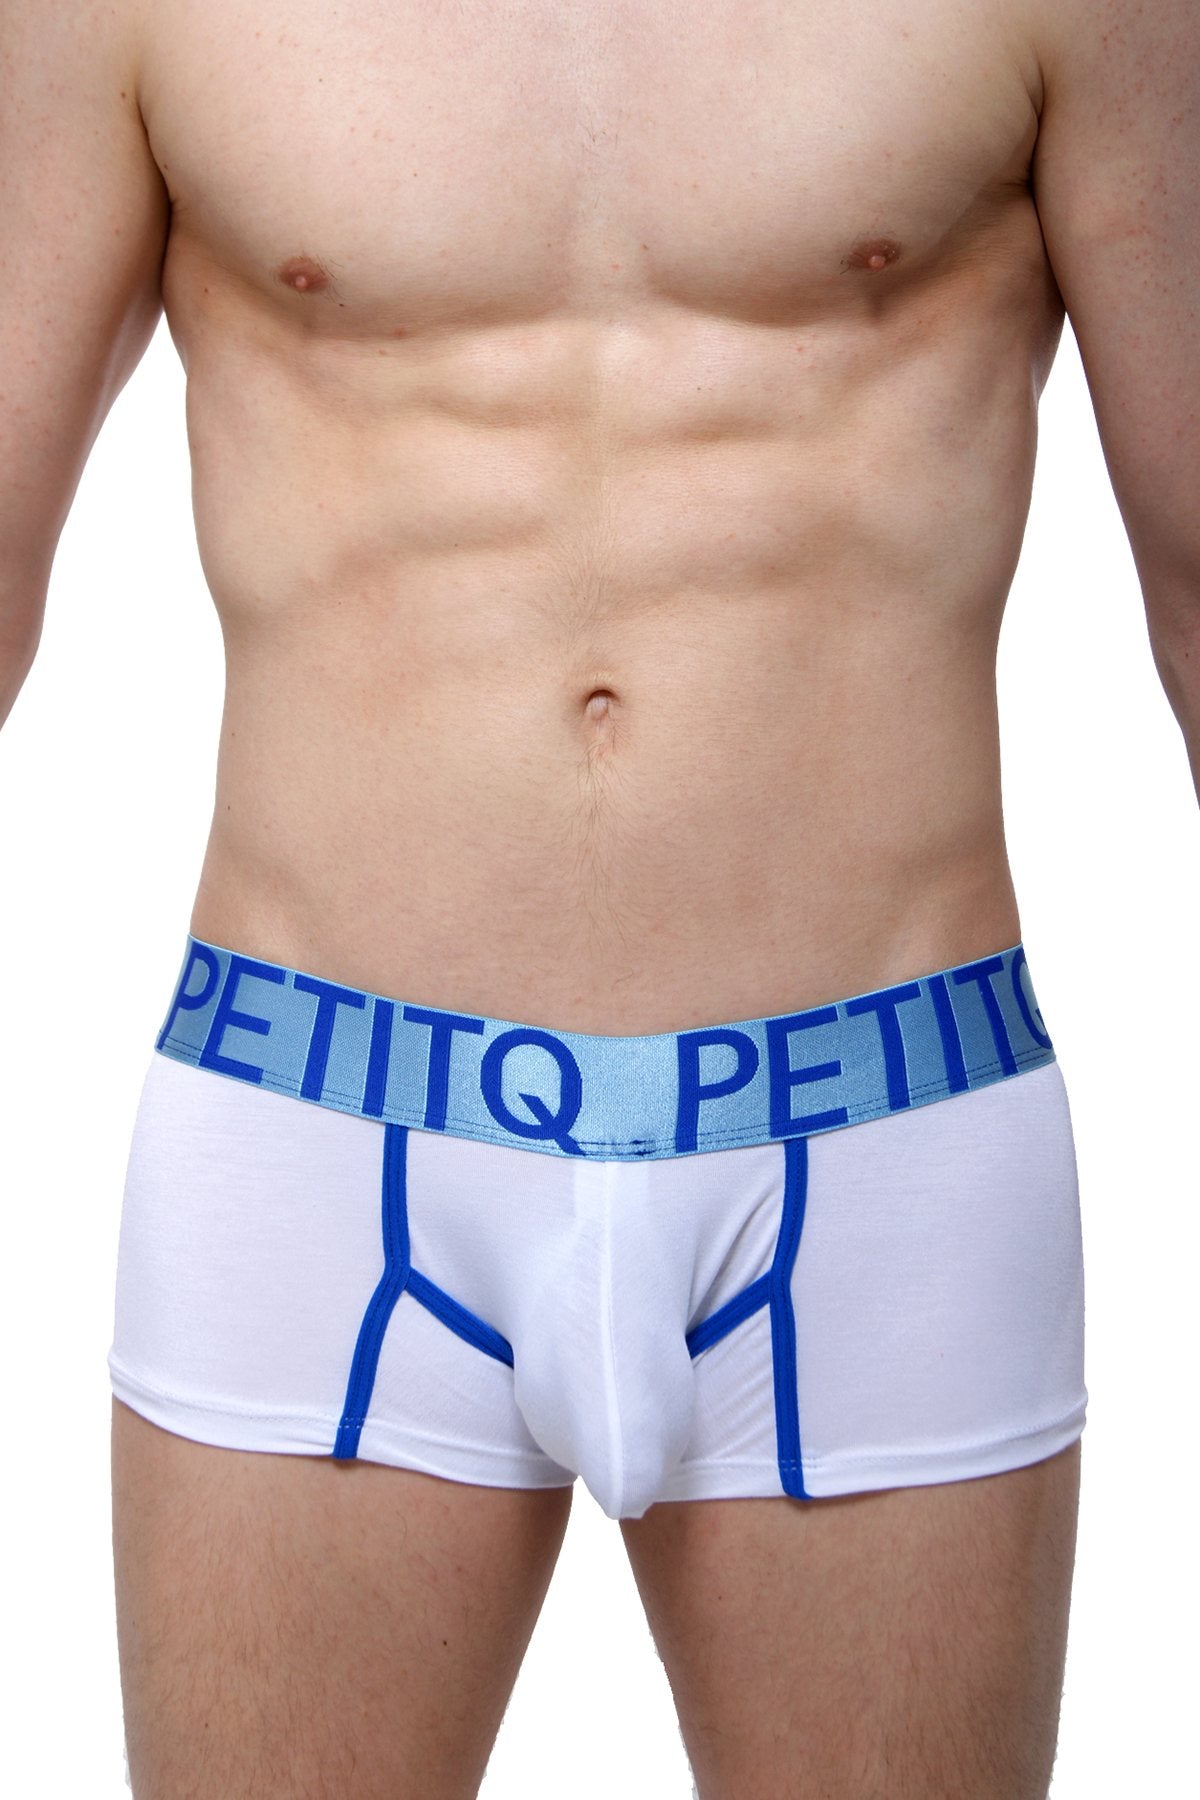 PetitQ White/Blue Mega Bulge Trunk